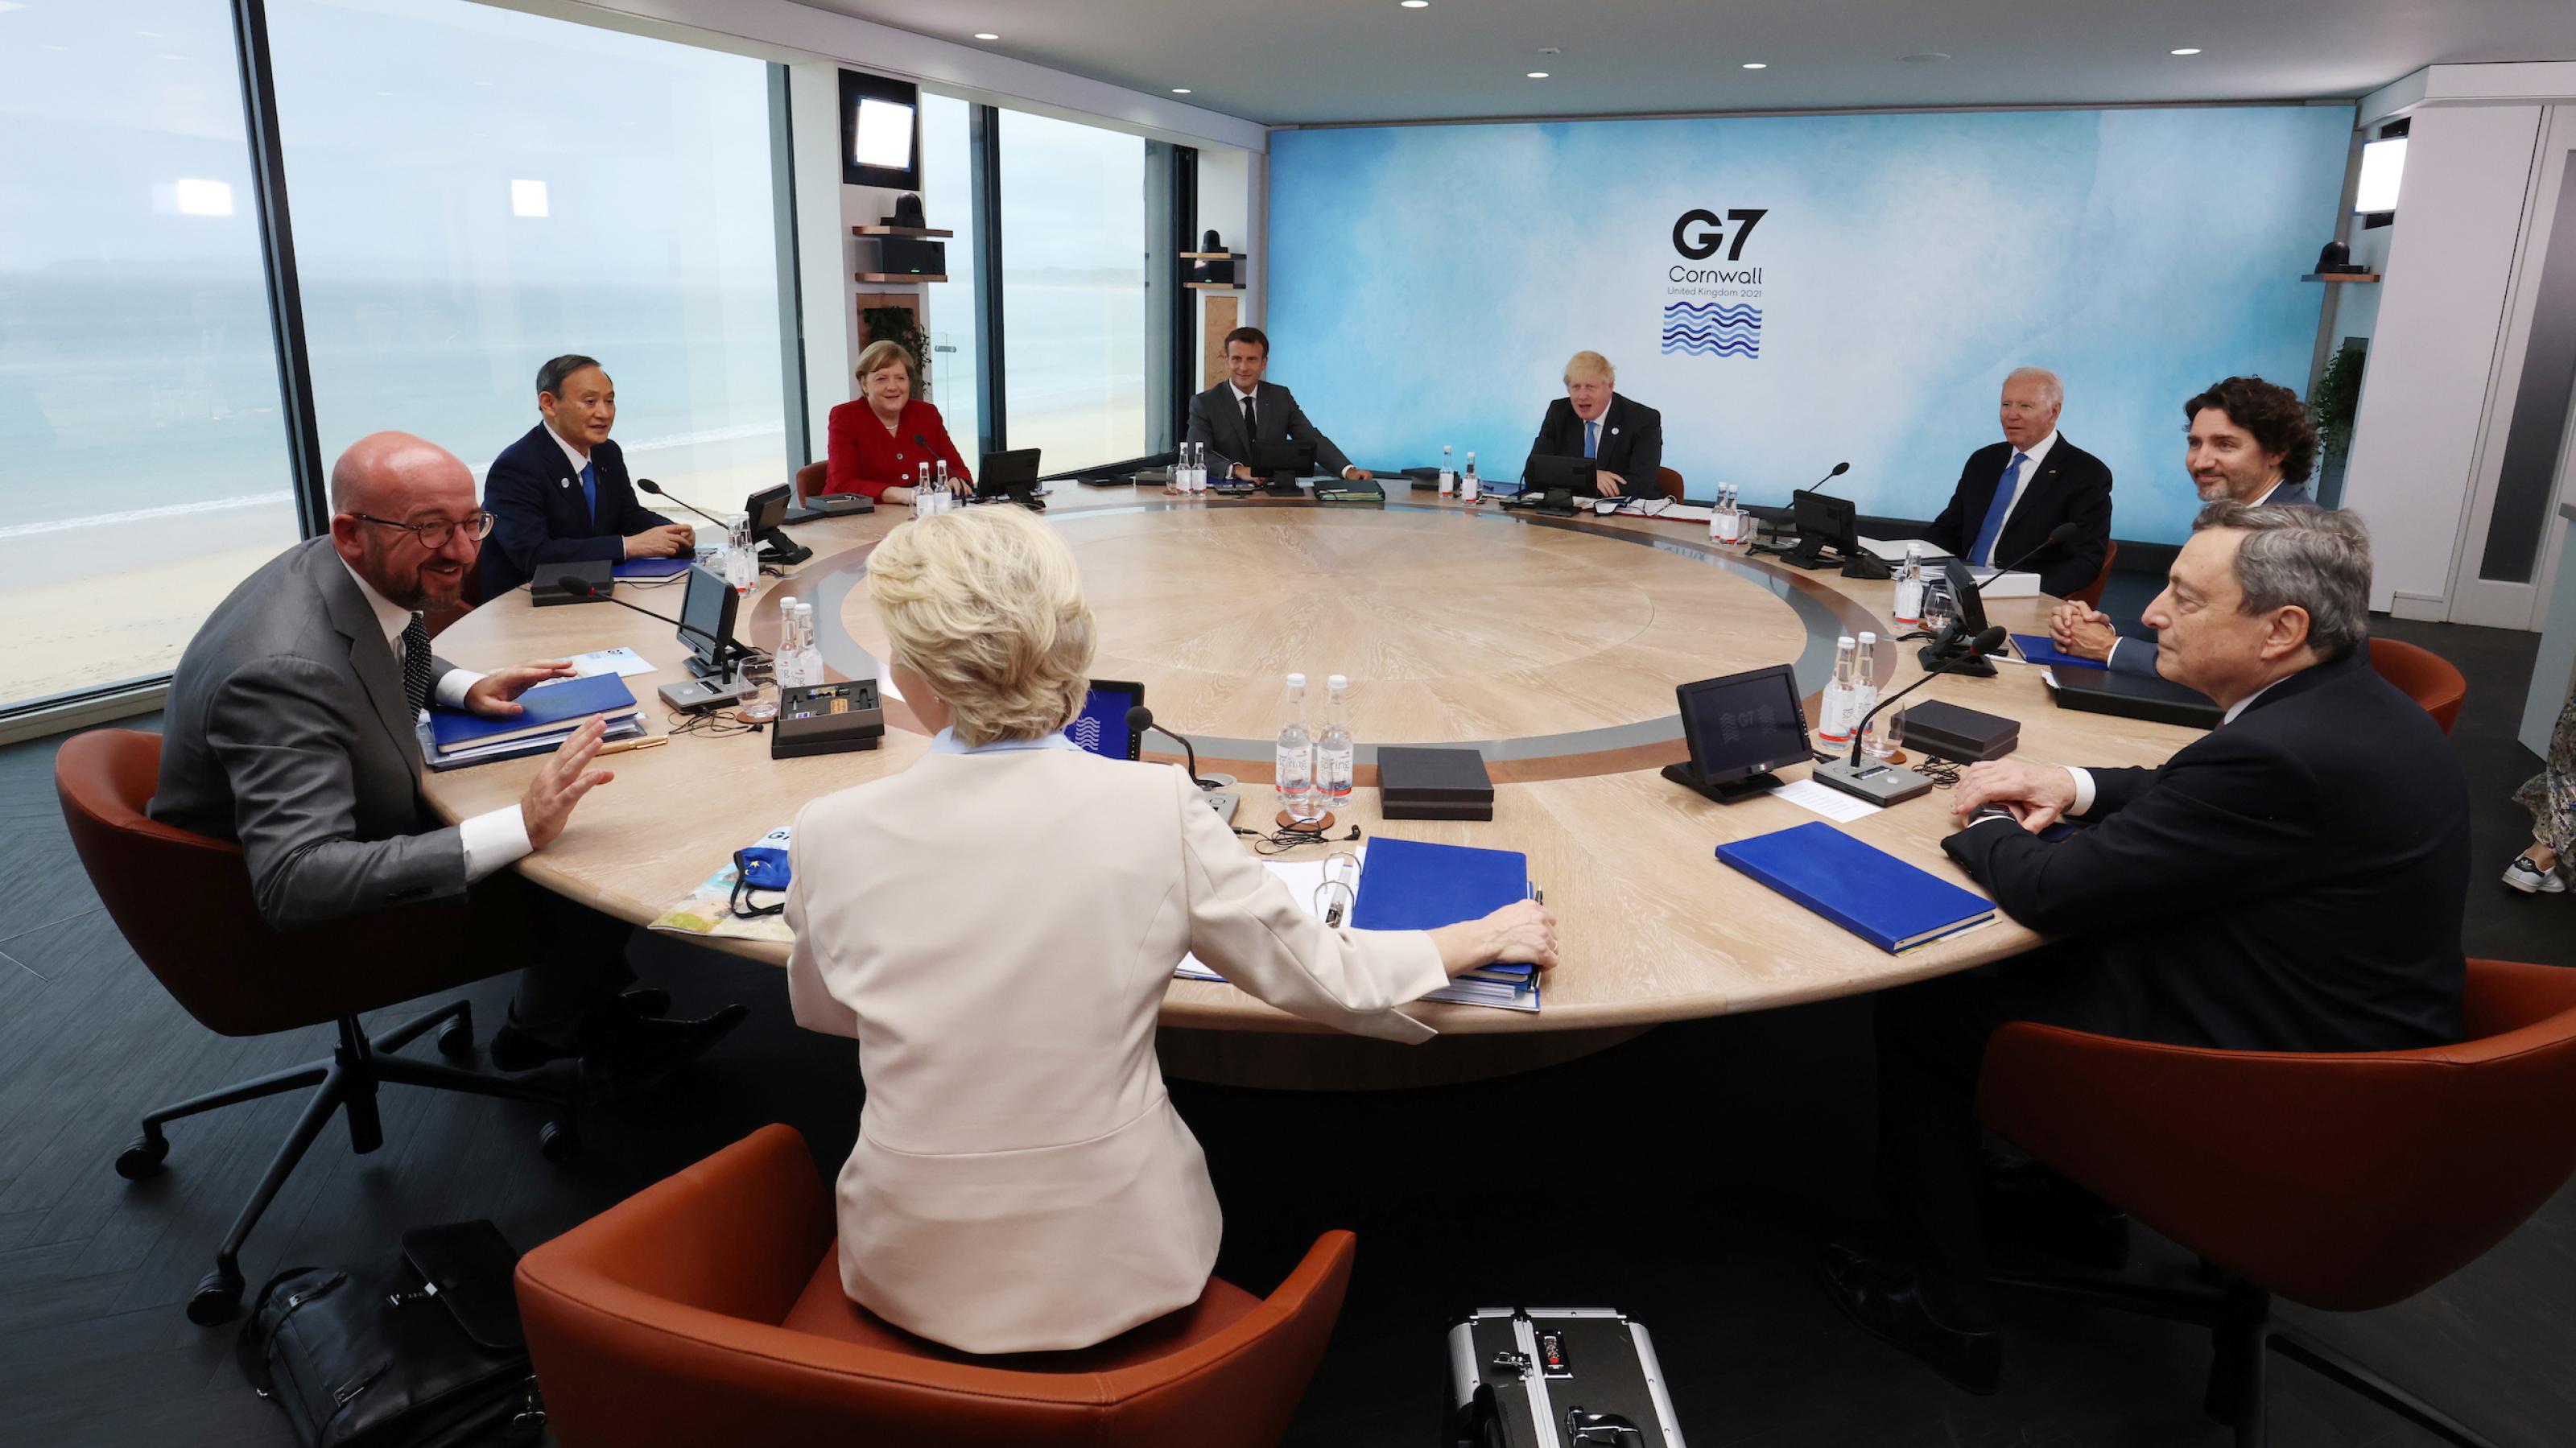 Die Regierungschefs der G7 an einem runden Tisch, hinter ihnen das Meer.